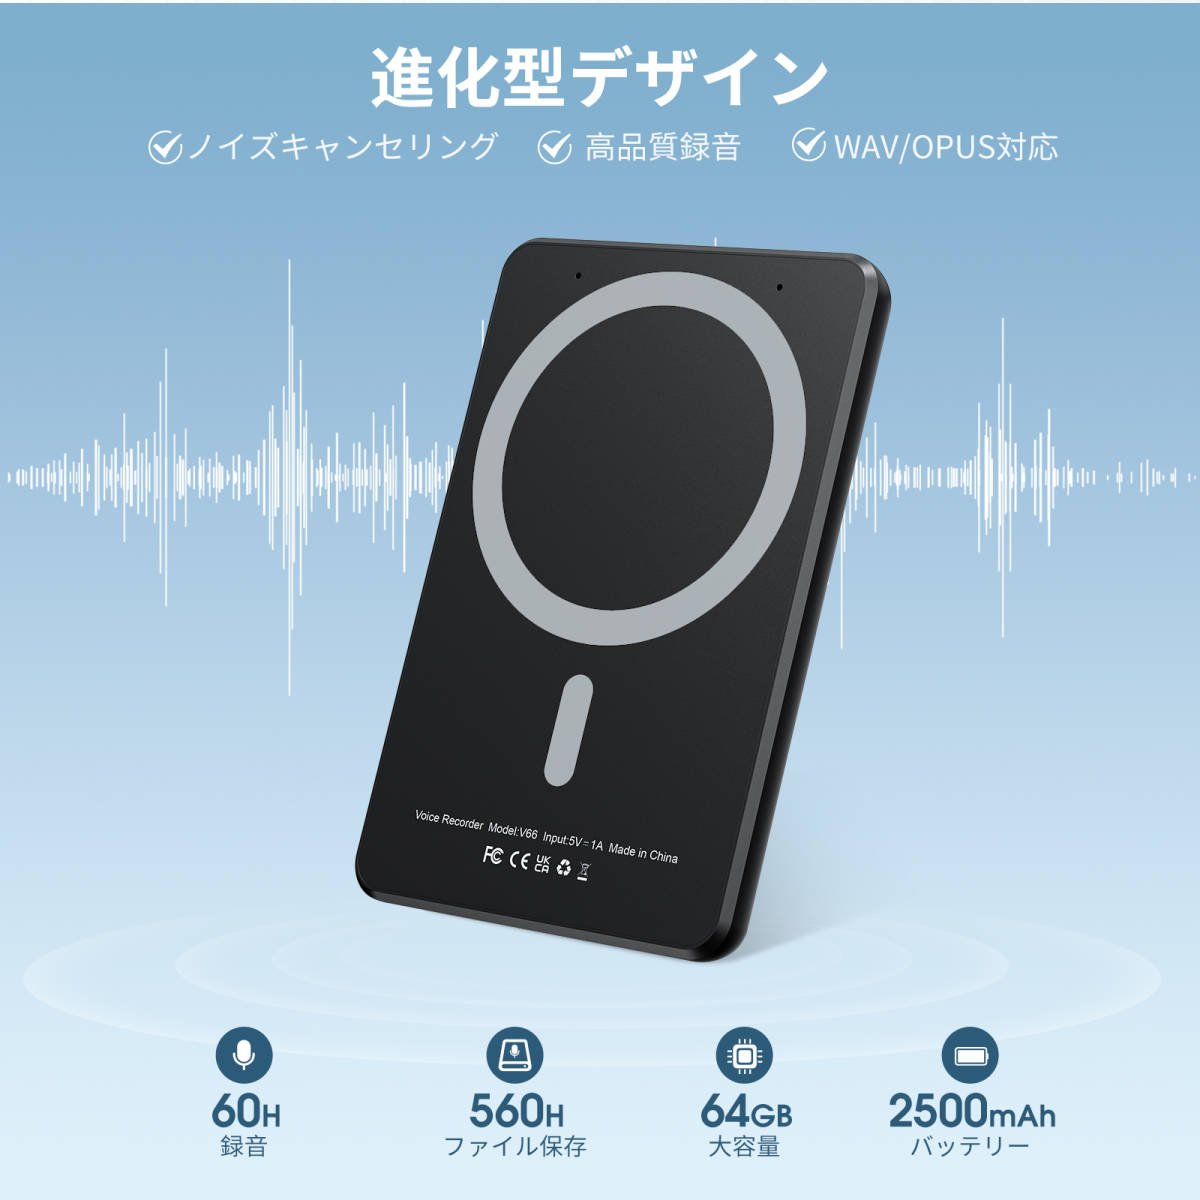 磁気吸着 ボイスレコーダー 64GB内蔵 60時間連続使用可能 録音 ワンボタン録音 レコーダー 通話録音 電話録音_画像6